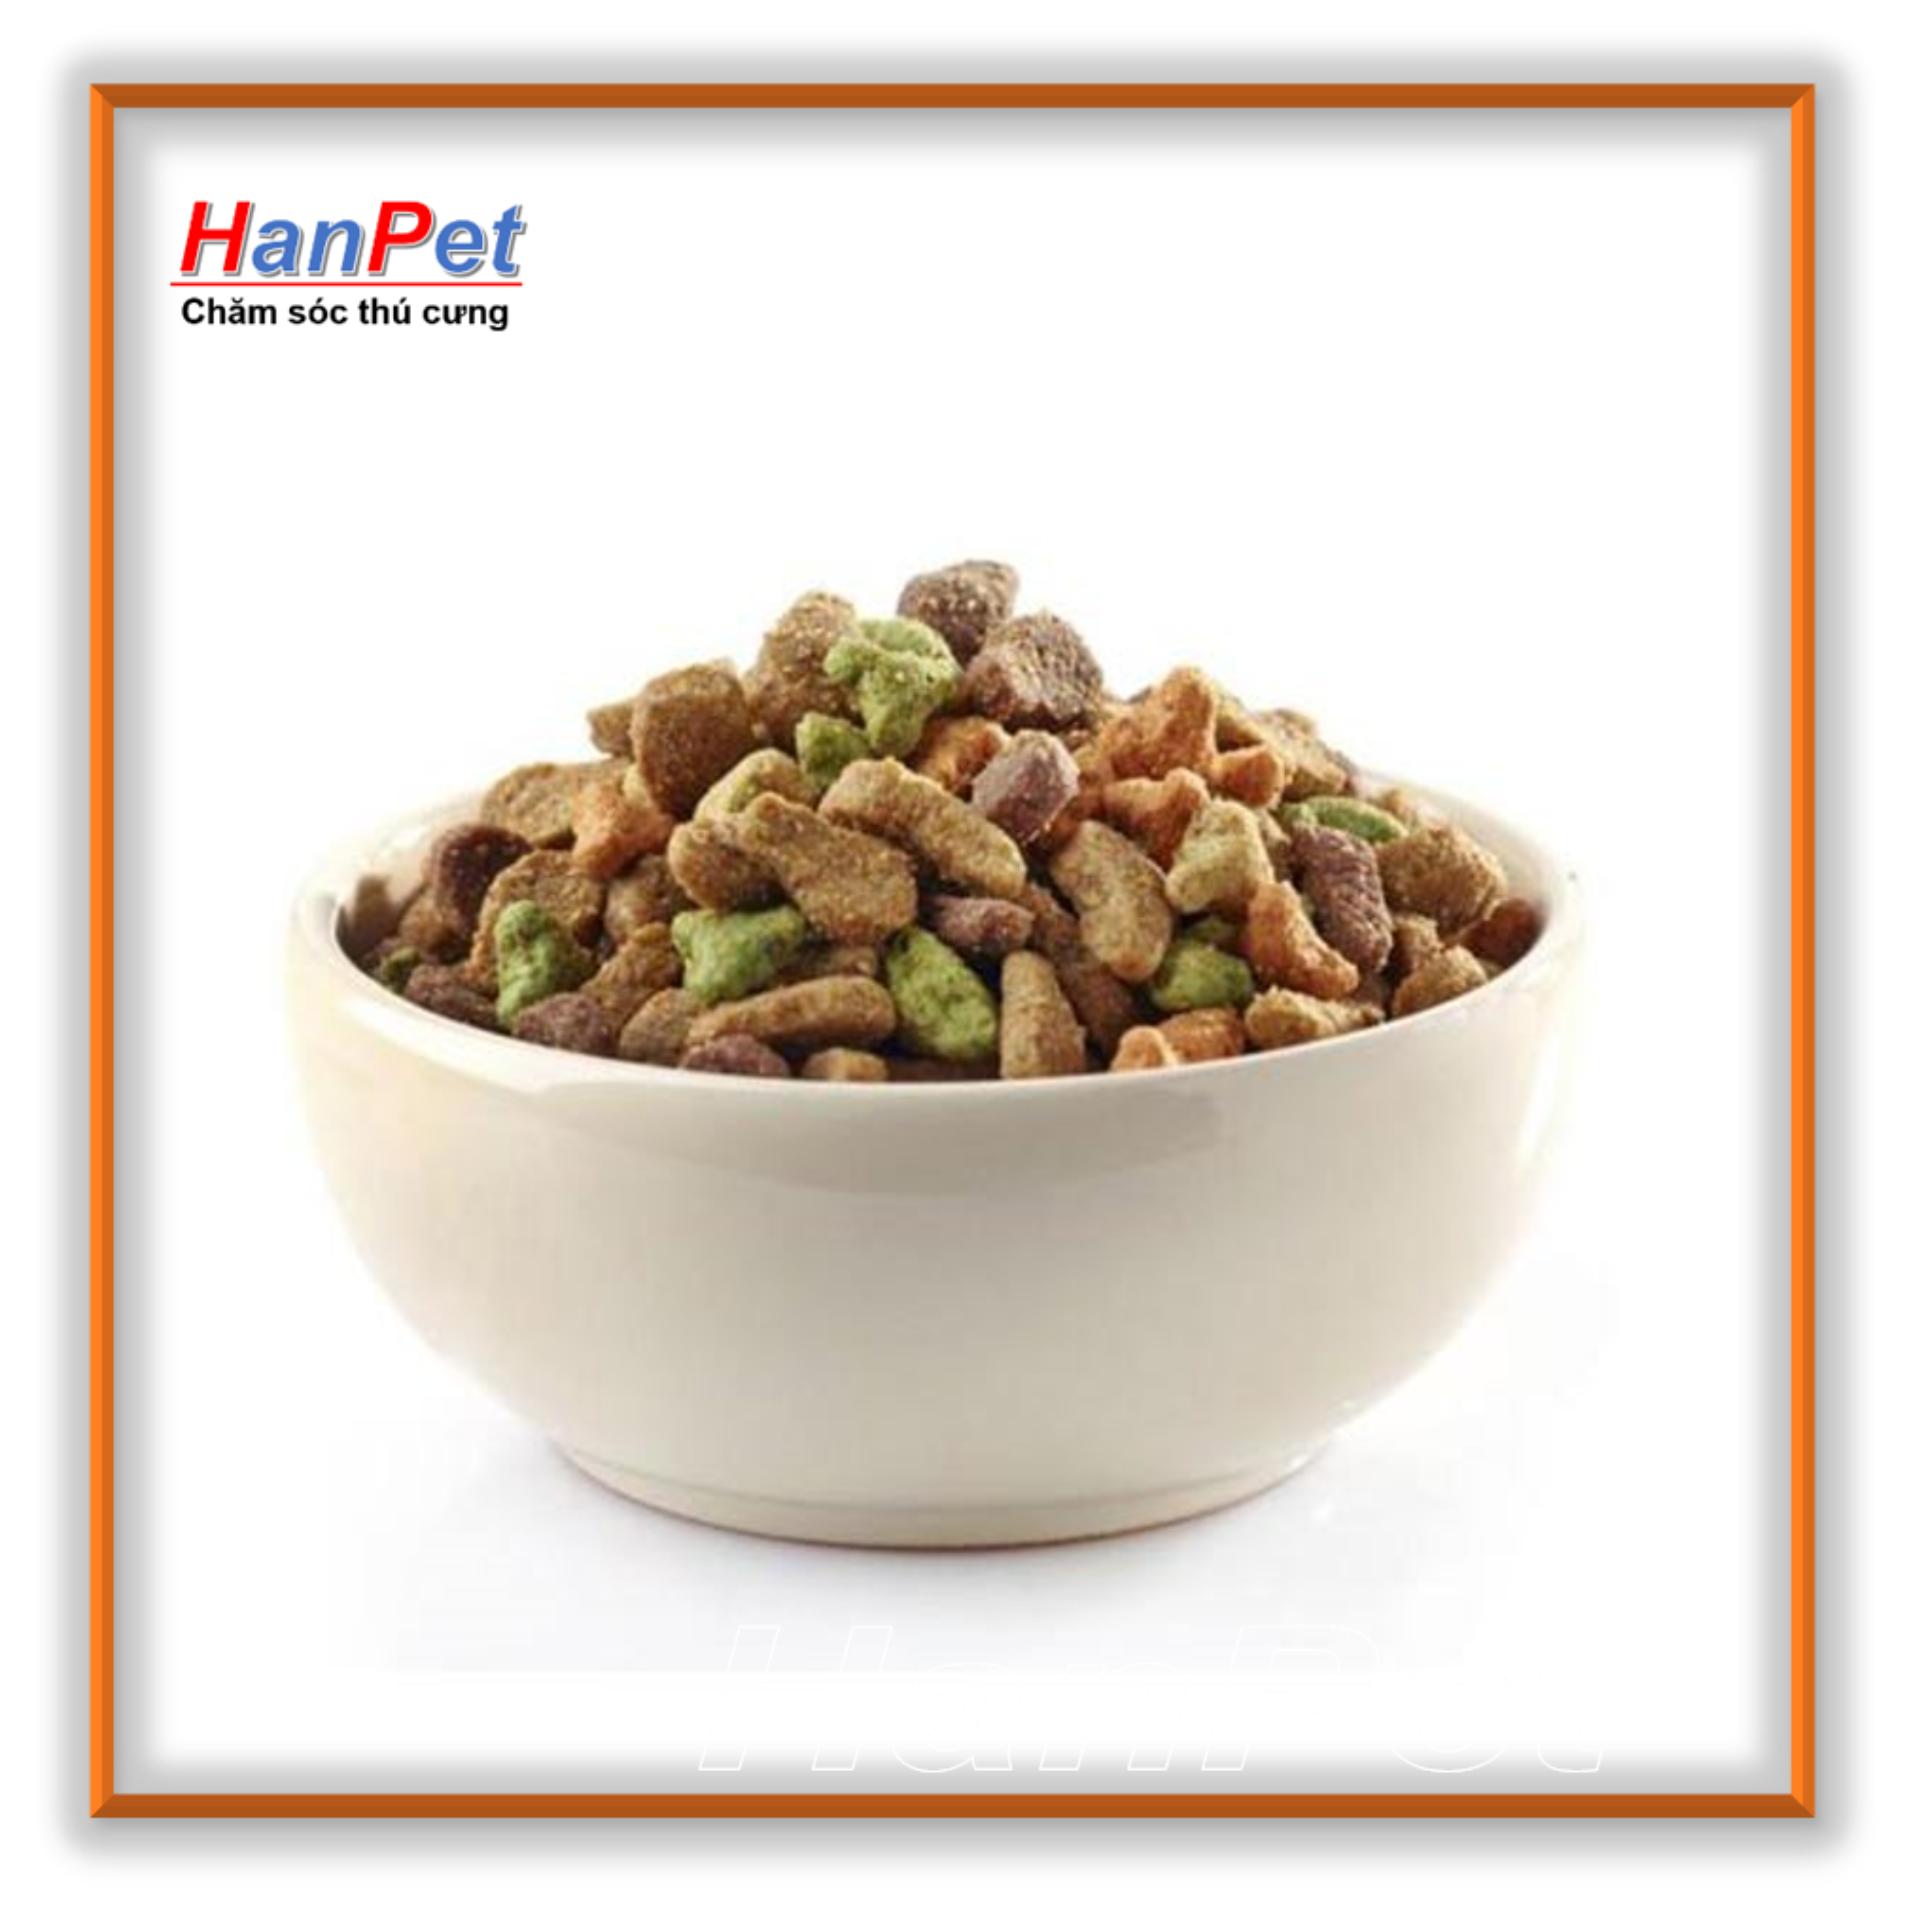 Hanpet - Thức ăn dạng hạt cho chó mini - Smartheart Gold phù hợp với chó kích thước nhỏ như poole và phốc